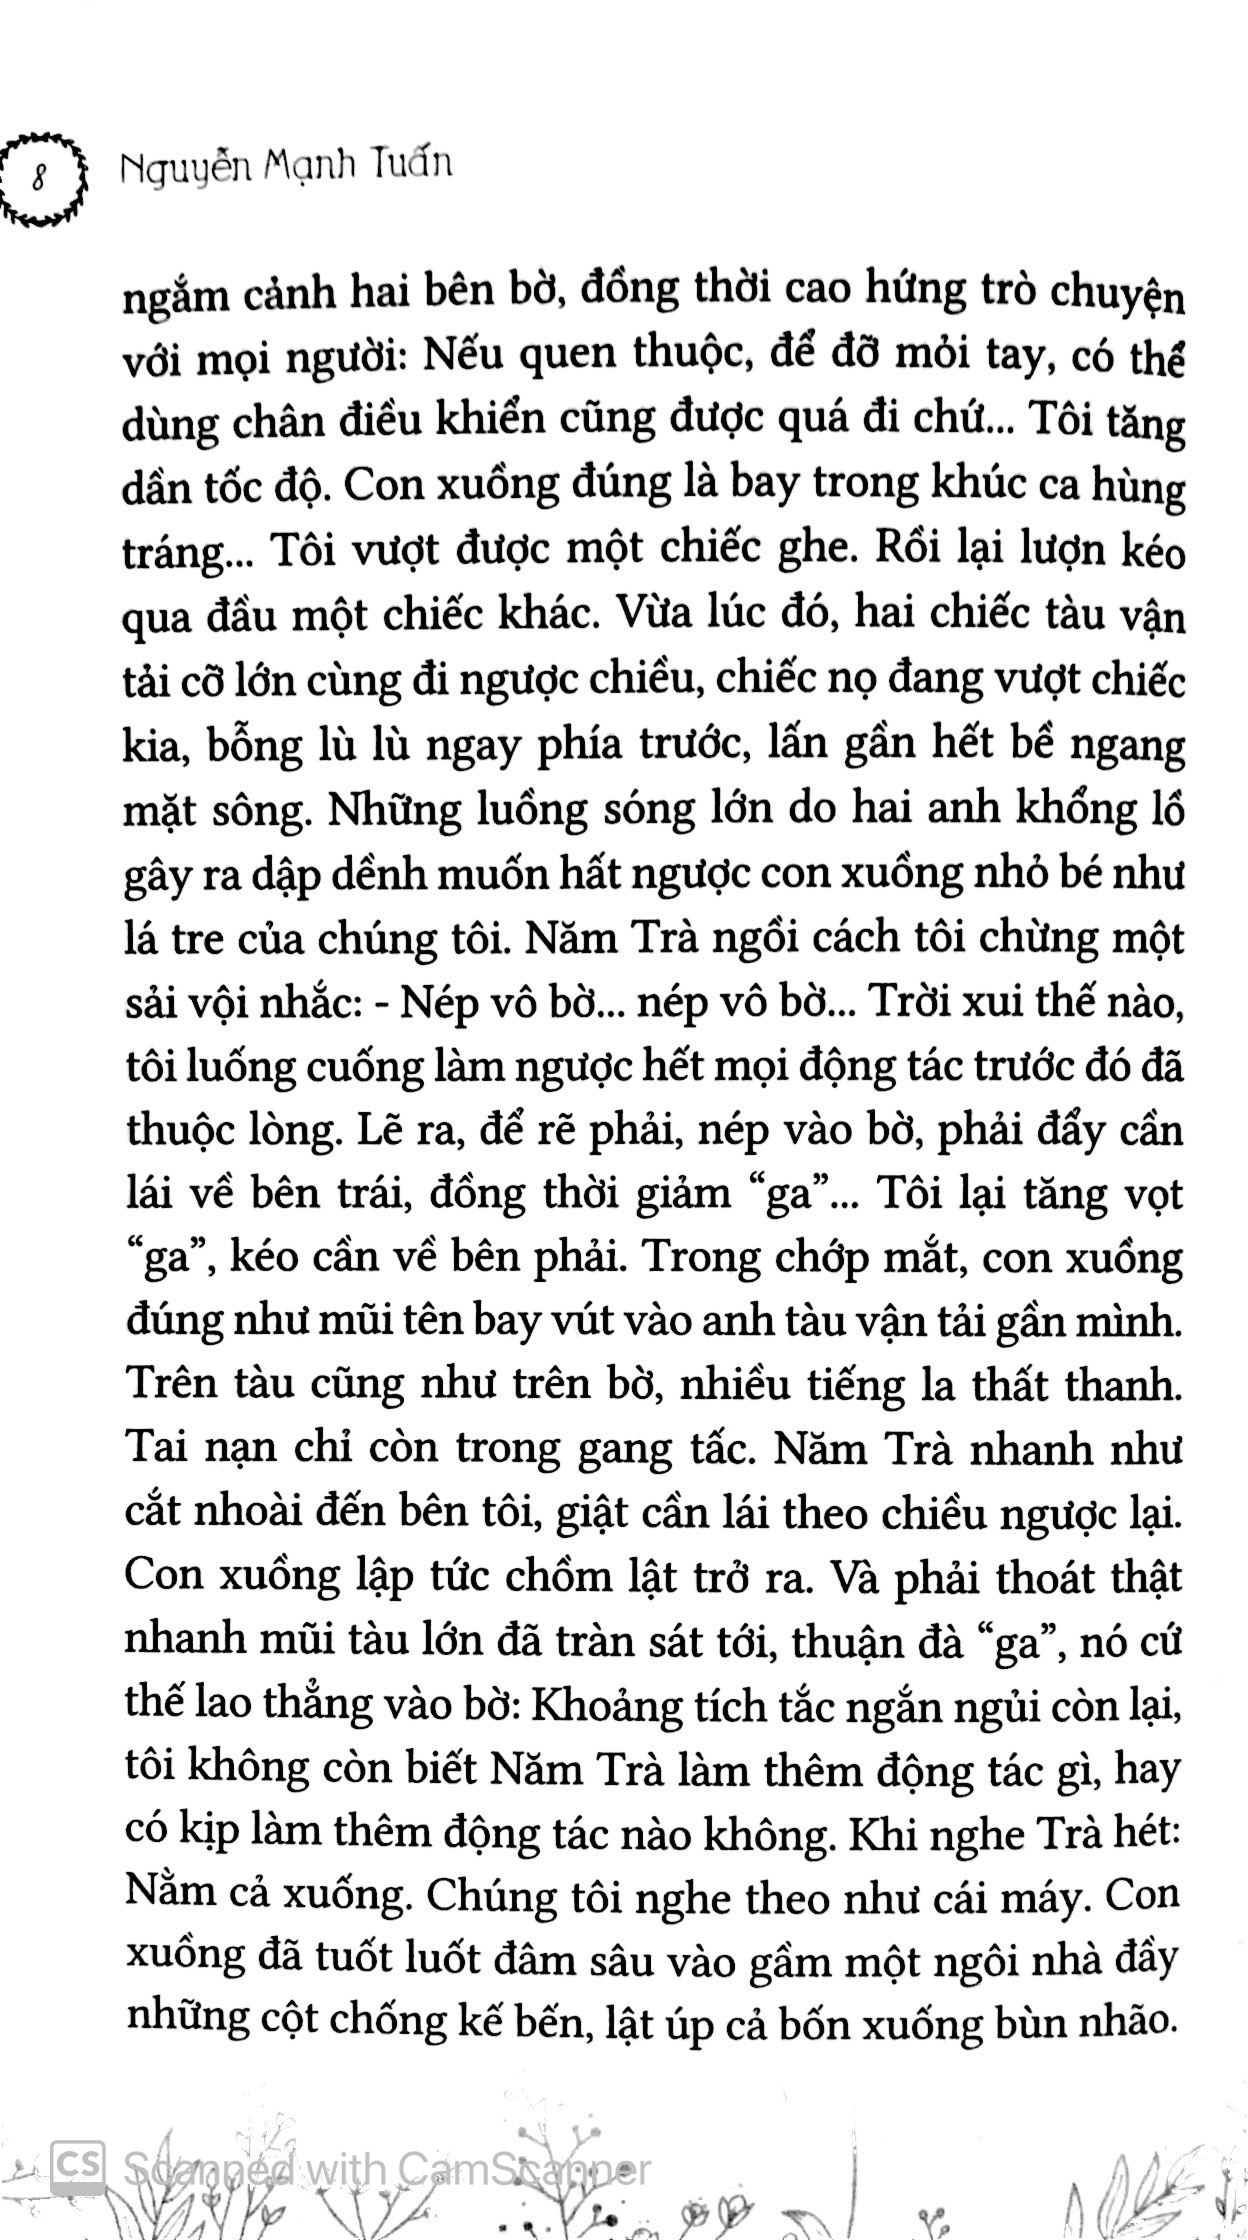 Cù Lao Tràm PDF